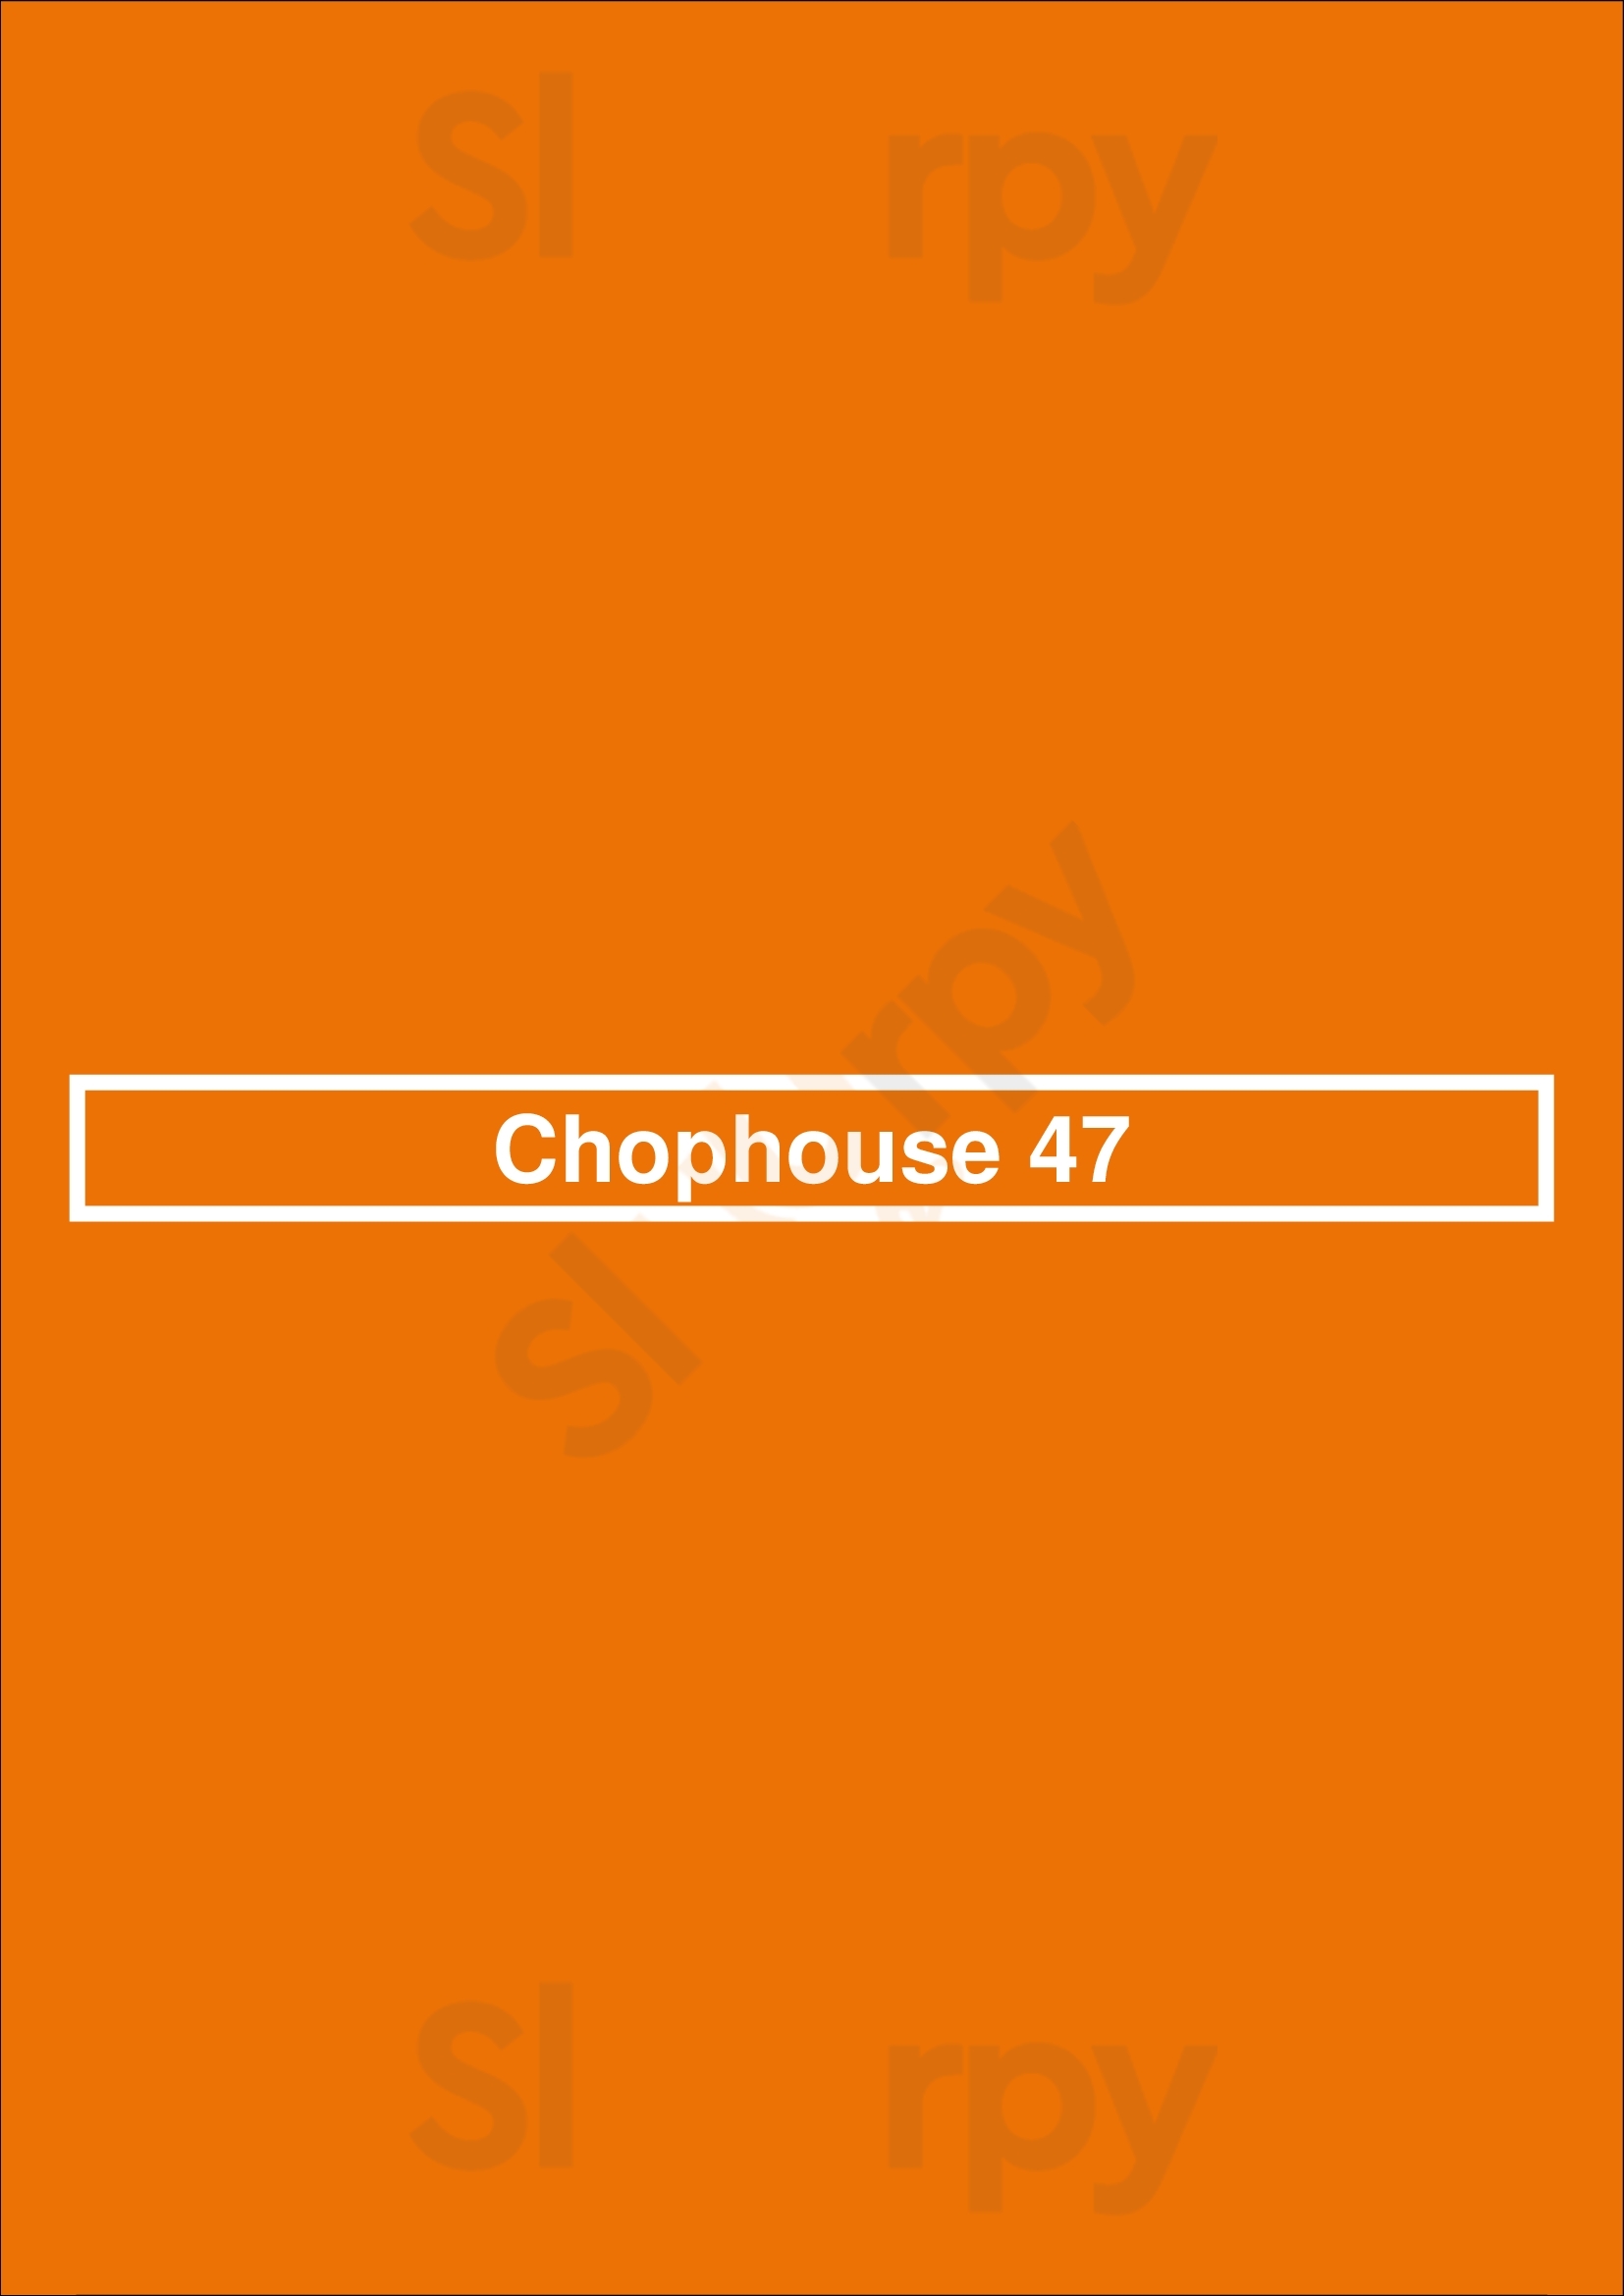 Chophouse 47 Greenville Menu - 1